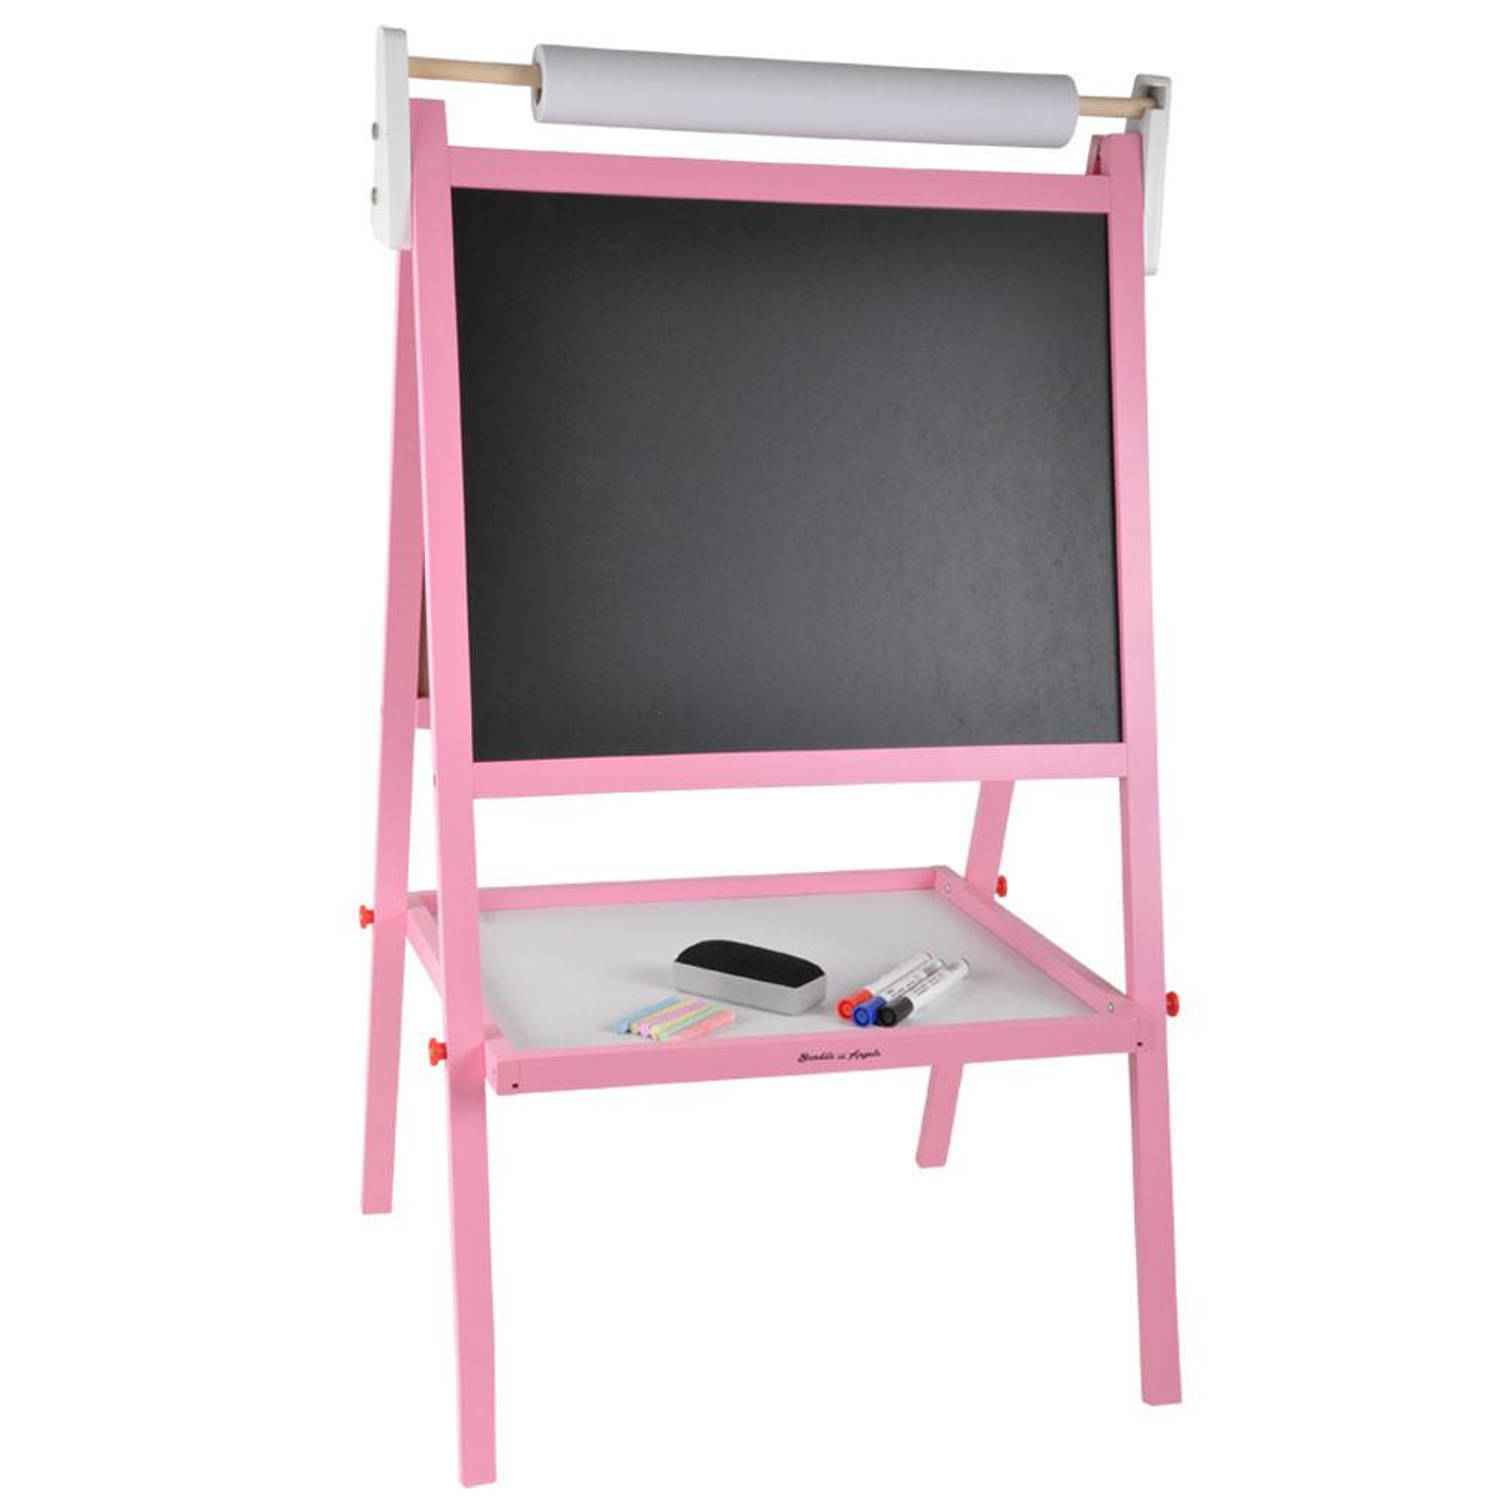 Bandits & Angels schoolbord roze (krijtbord en whiteboard) + papierrrol en accessoires